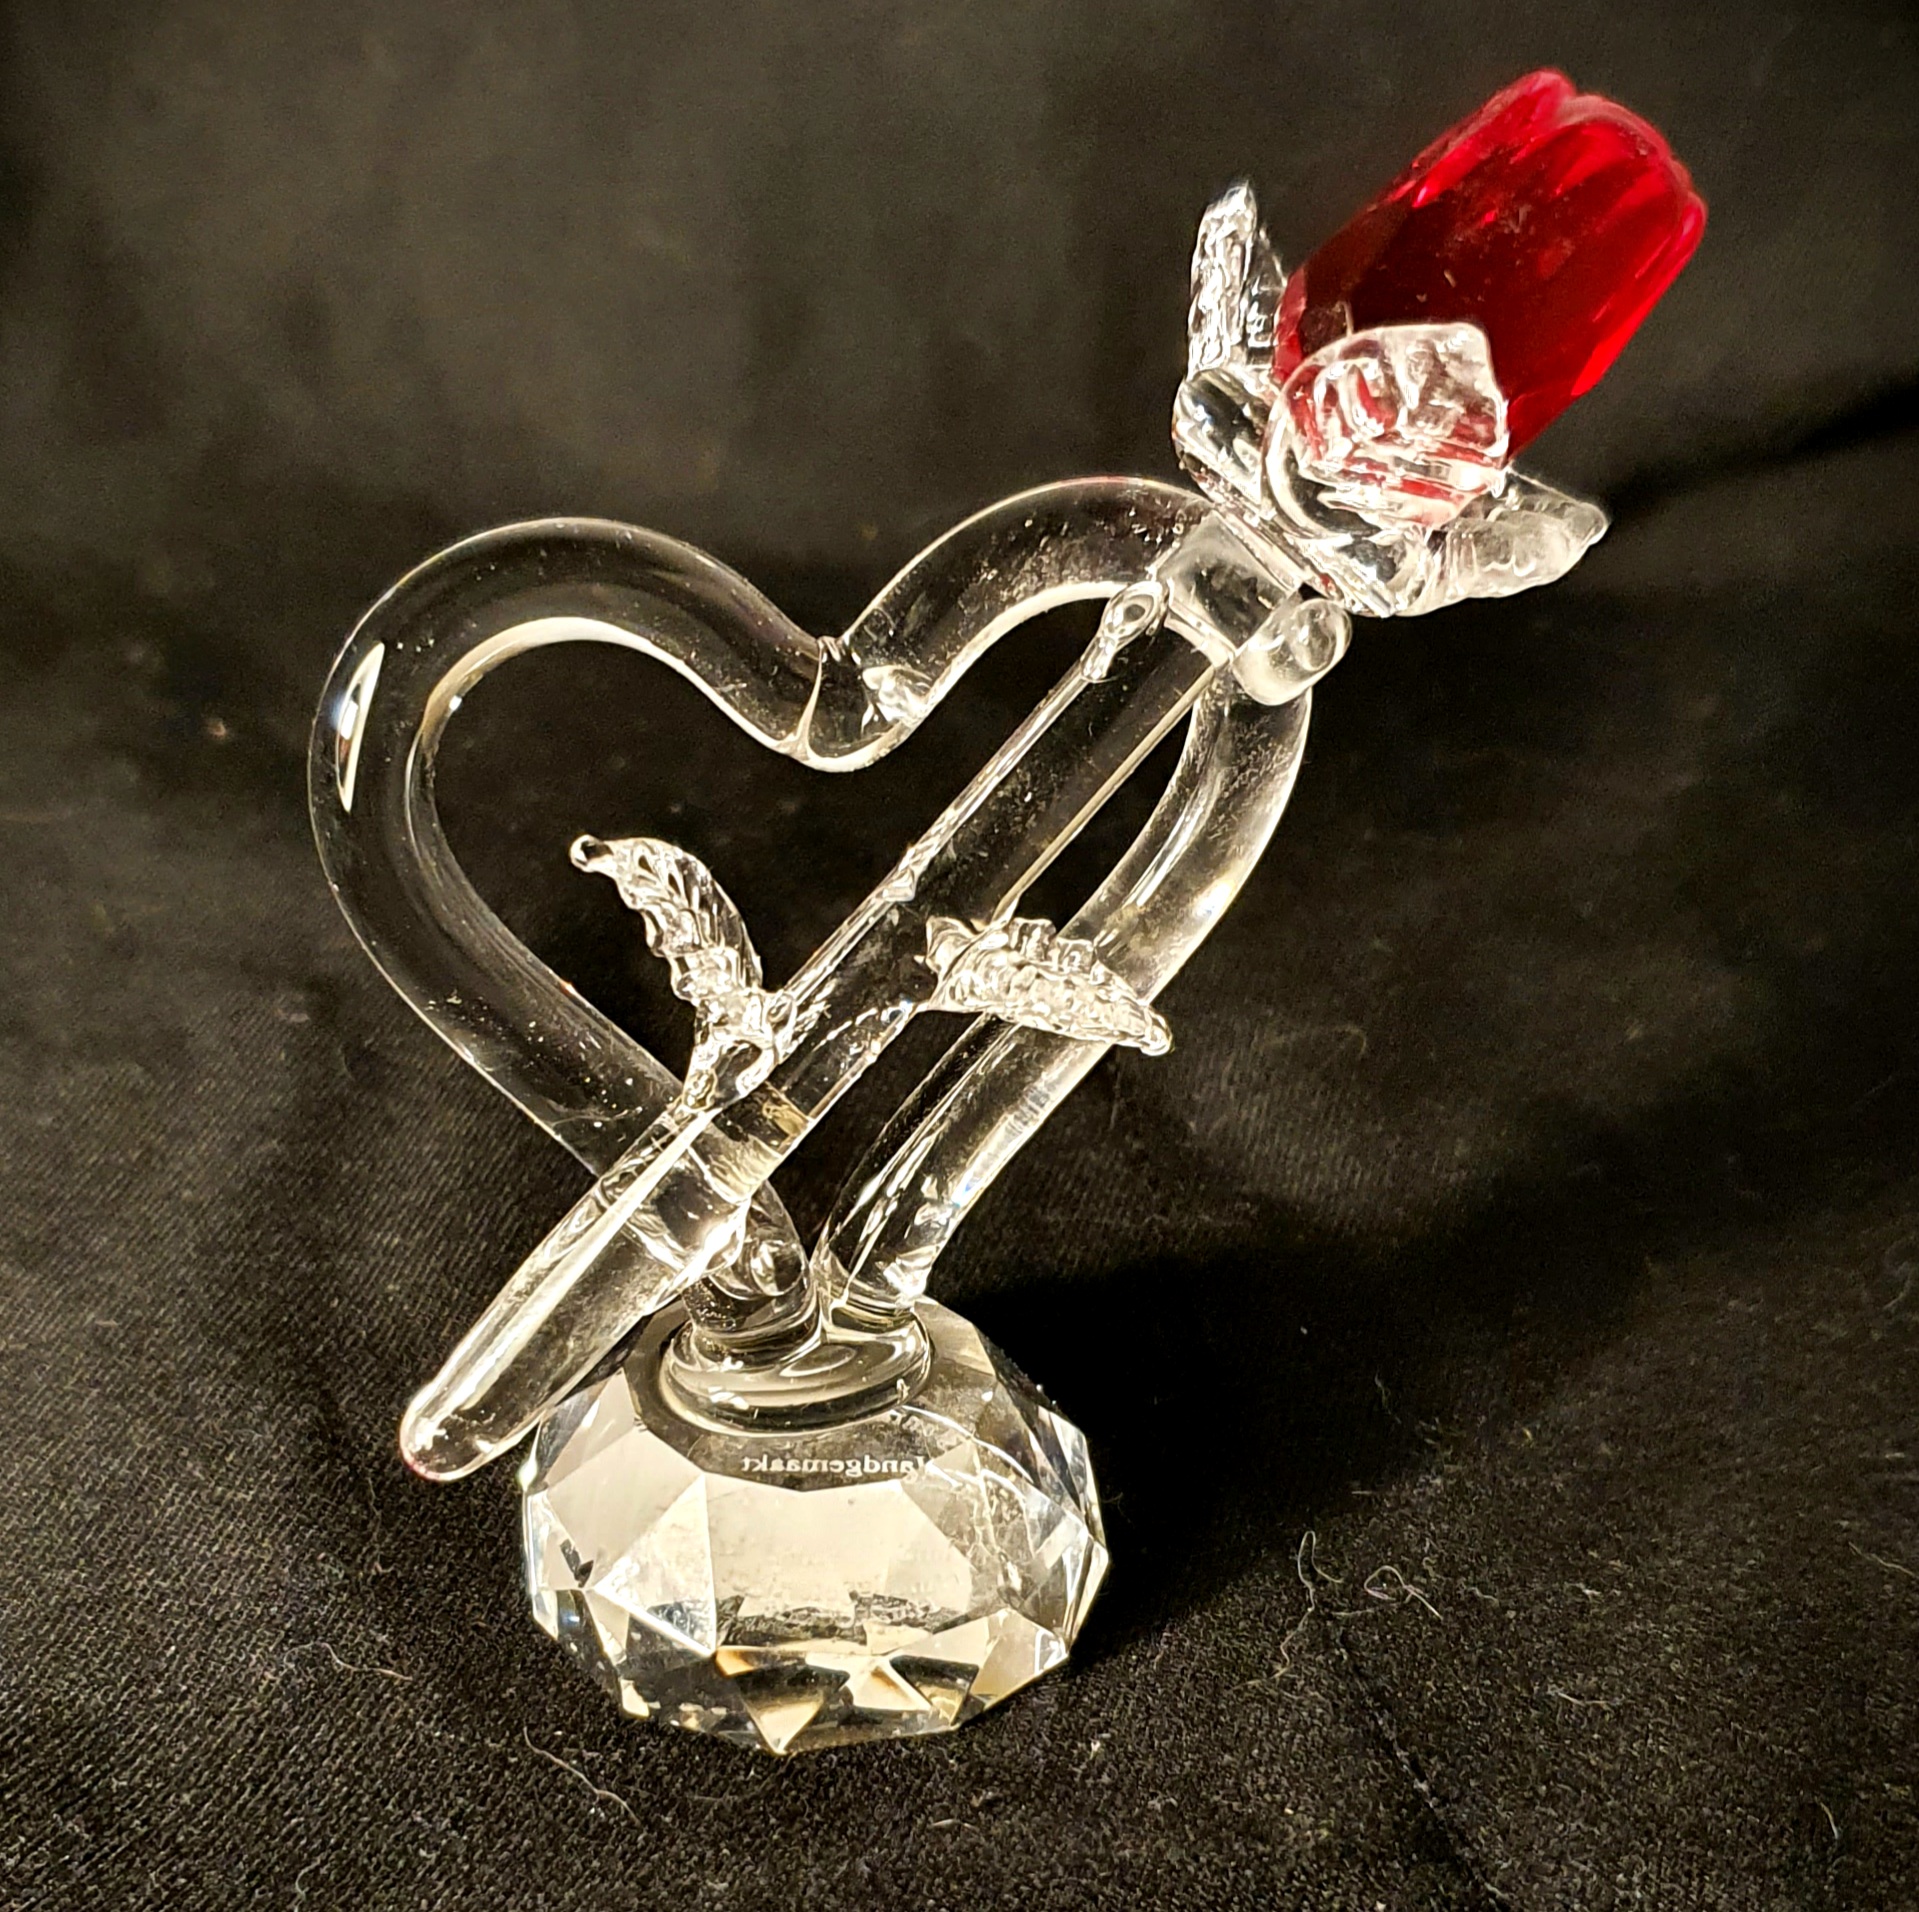 Protestant mooi krekel Kristallen hart met rode roos - Bijzondergemaakt